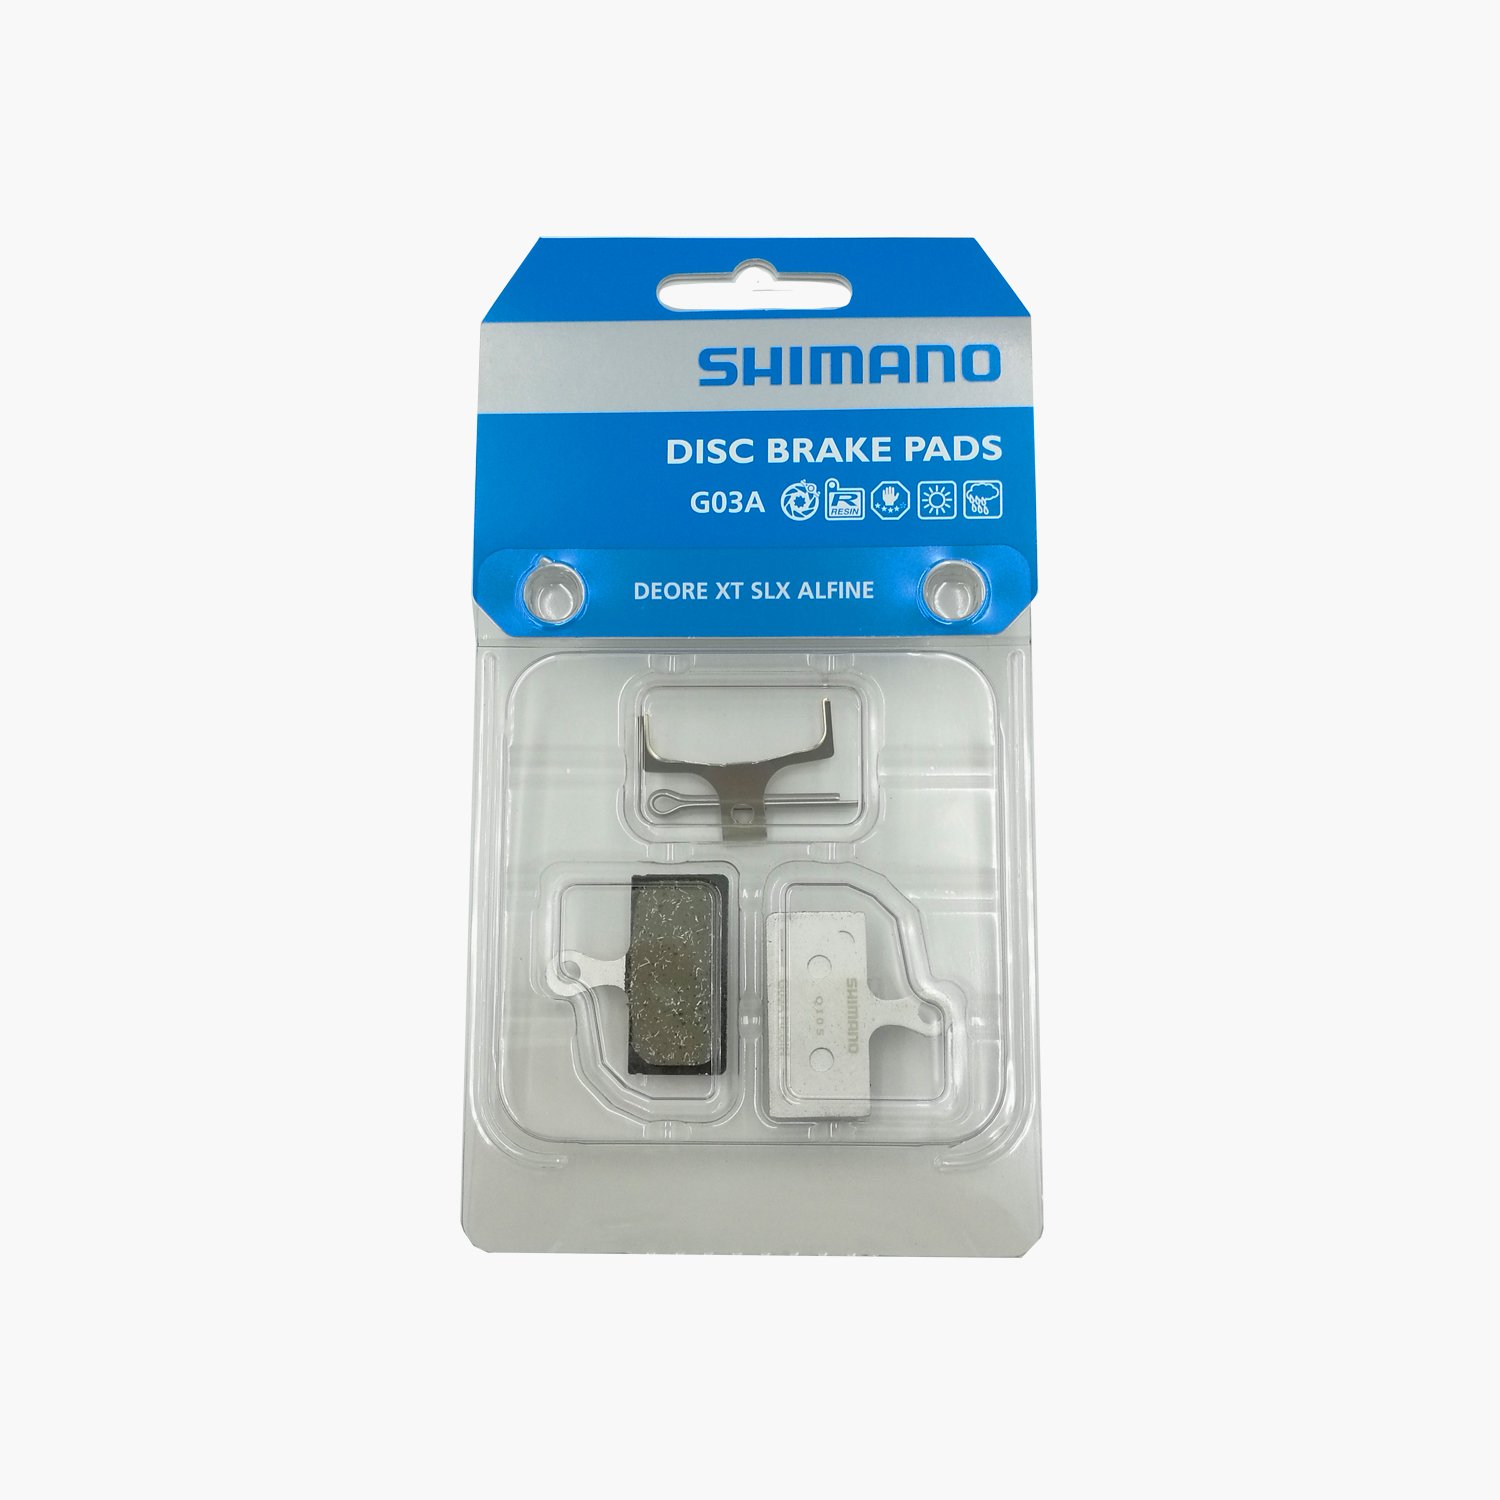 Тормозные колодки Shimano G03A, для дисковых тормозов, смола, пара, Y8LV98010 купить на ЖДБЗ.ру - фотография № 2